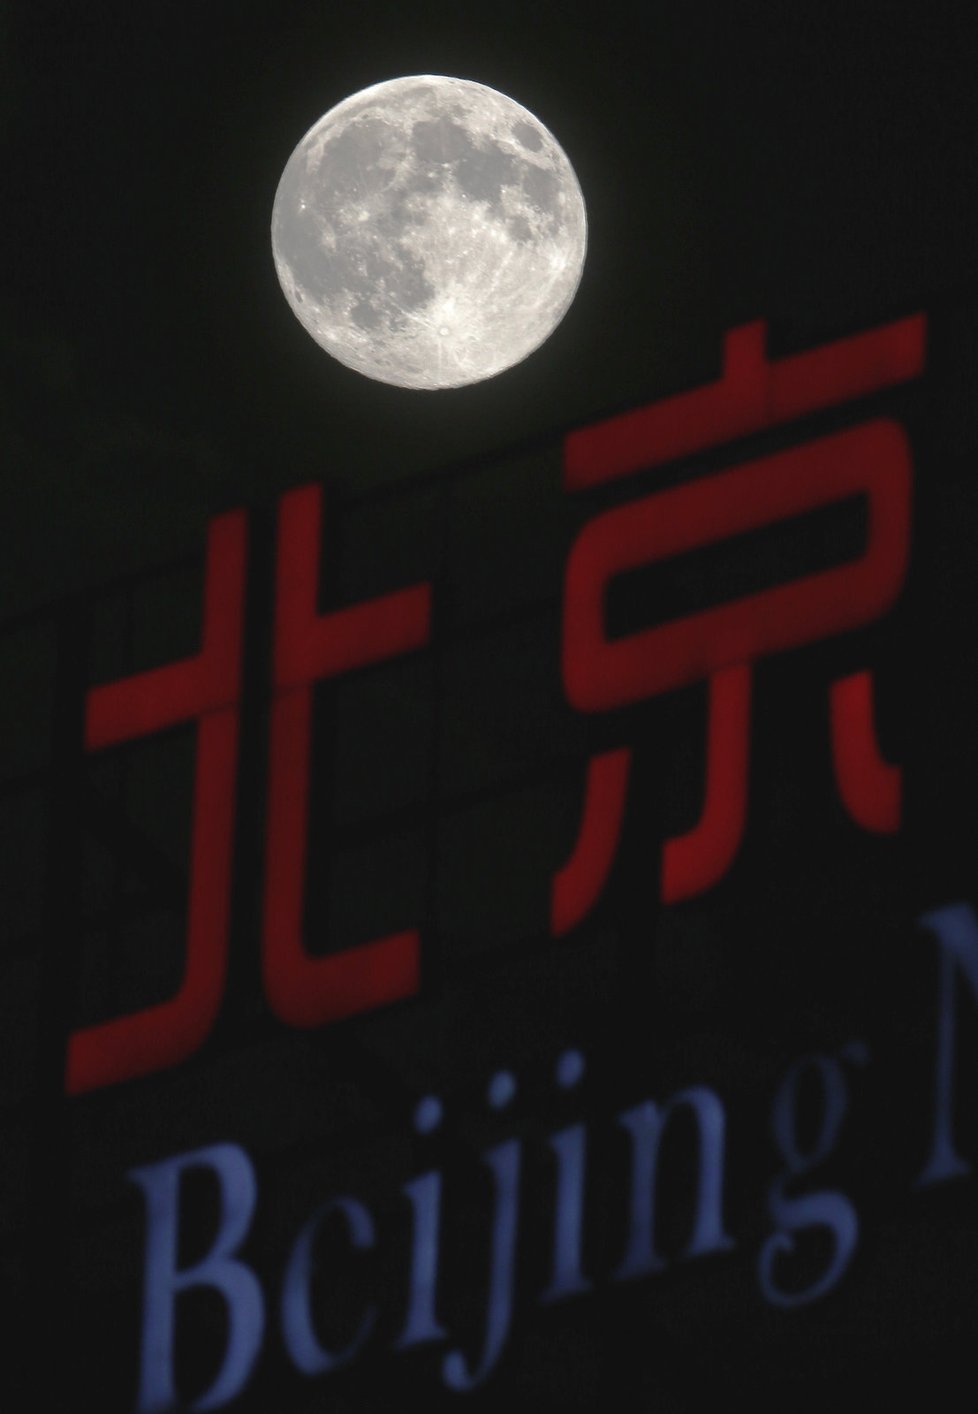 Měsíc osvěcuje nápis Peking v Číně.